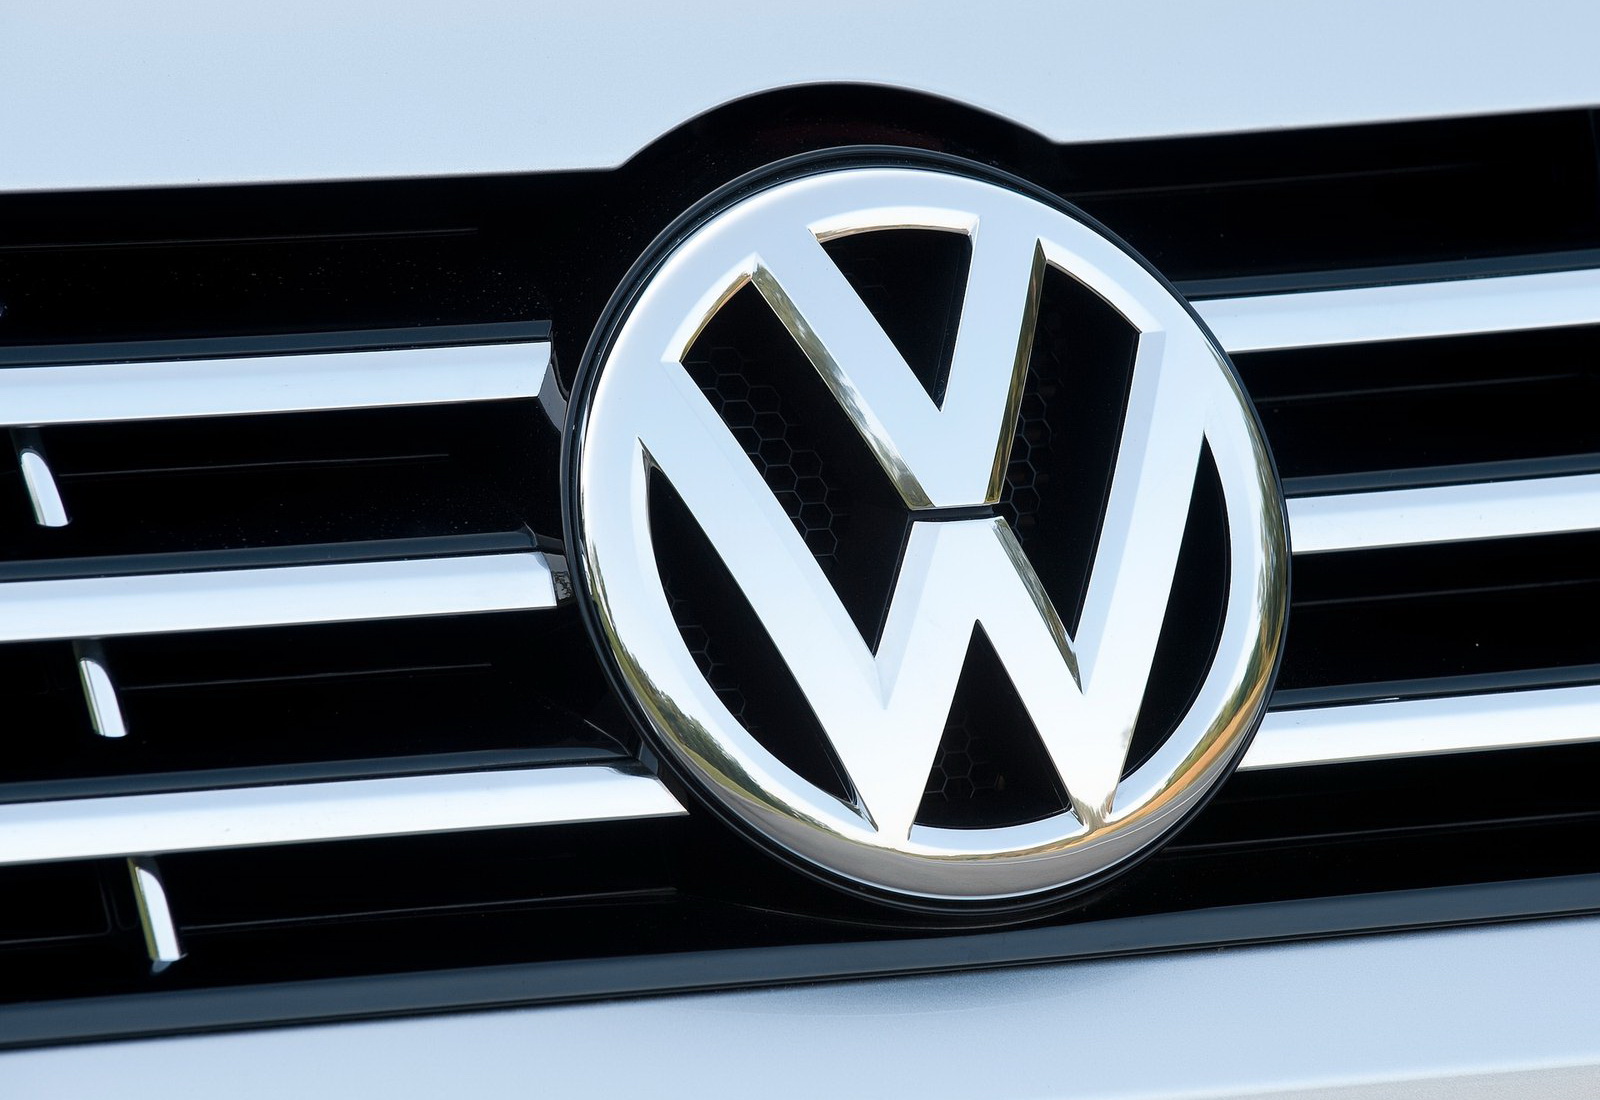 VW Logosunun Ortasında Çizgi var mıydı?